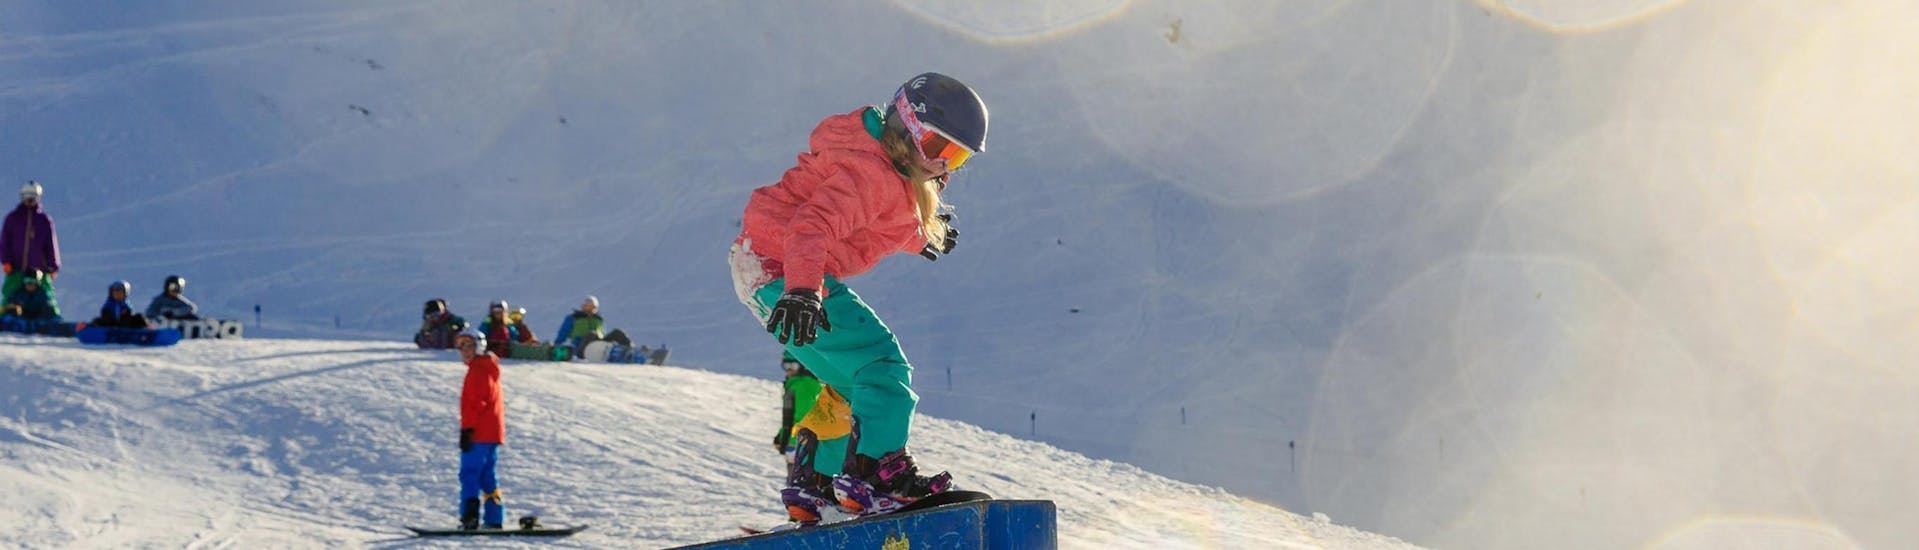 Cours de snowboard dès 7 ans pour Tous niveaux avec Ski School ESKIMOS Saas-Fee.